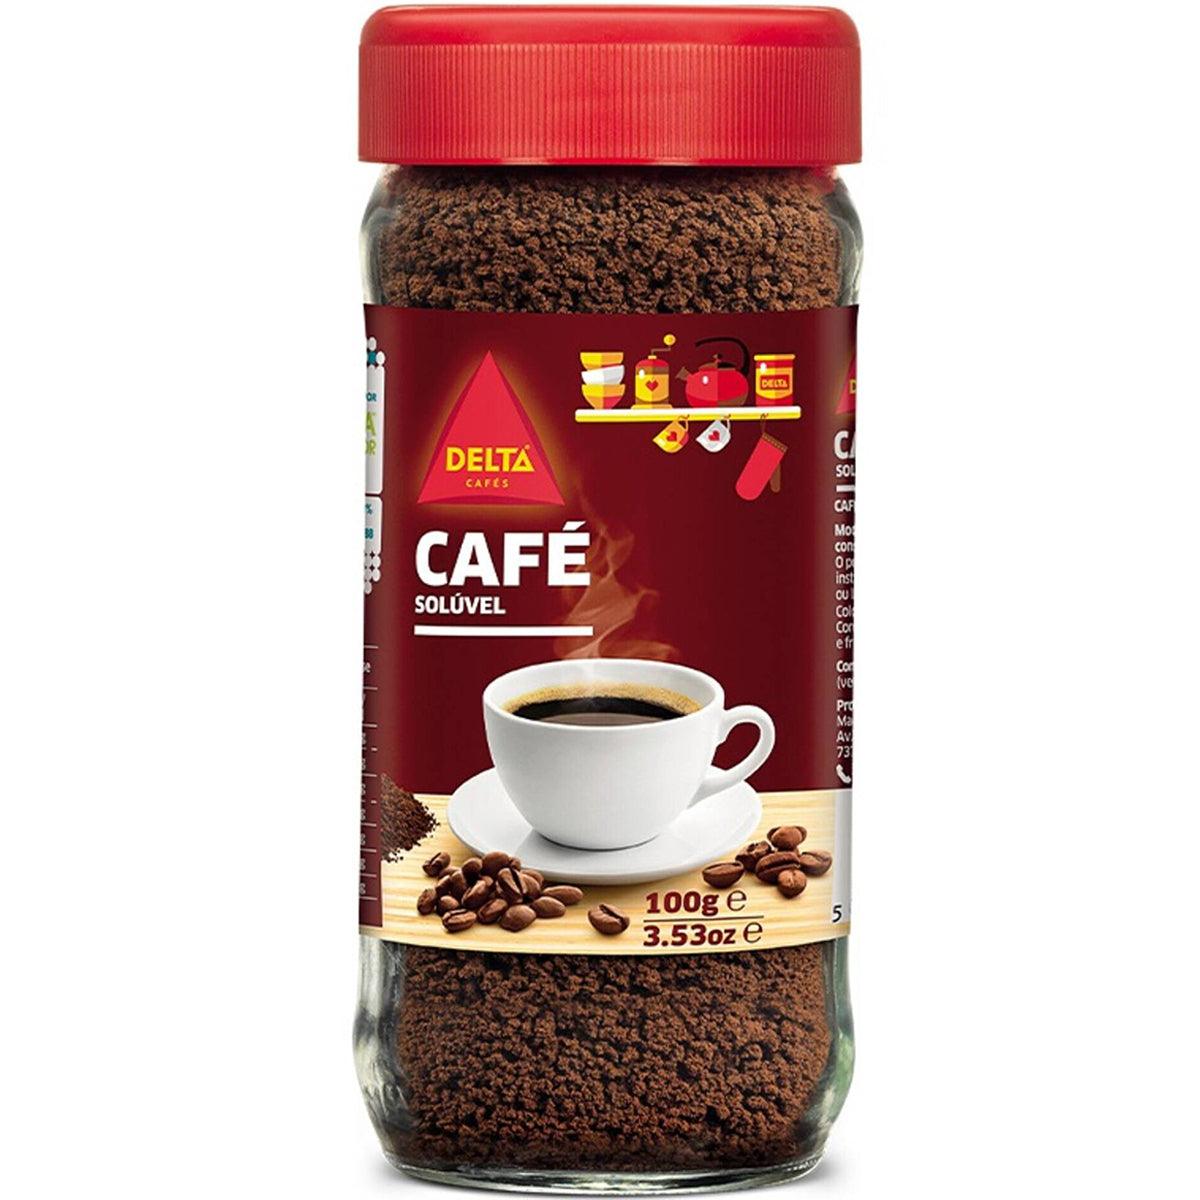 Café soluble Delta 200 g.